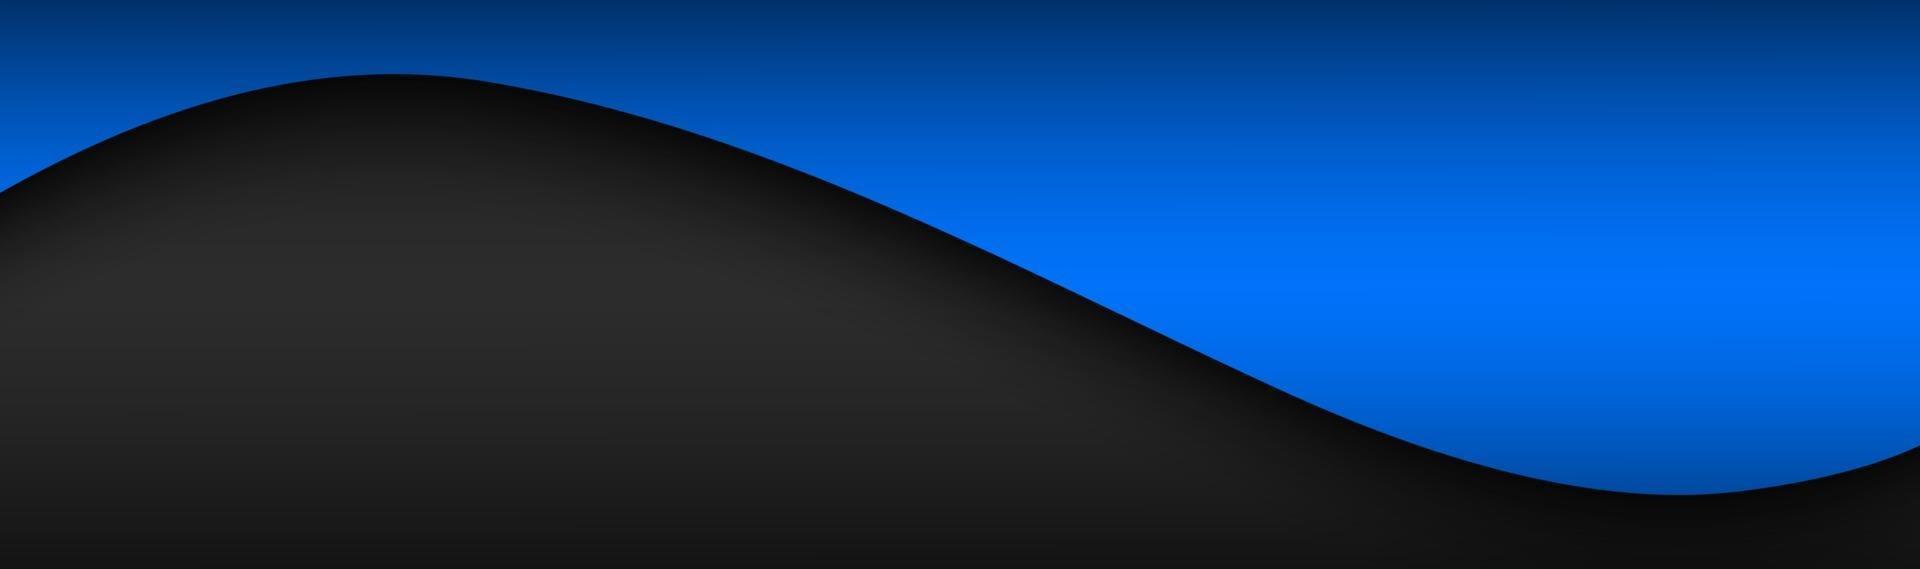 en-tête de vecteur vague abstrait noir et bleu avec un espace vide pour votre texte design d'entreprise moderne bannière vector illustration d'arrière-plan